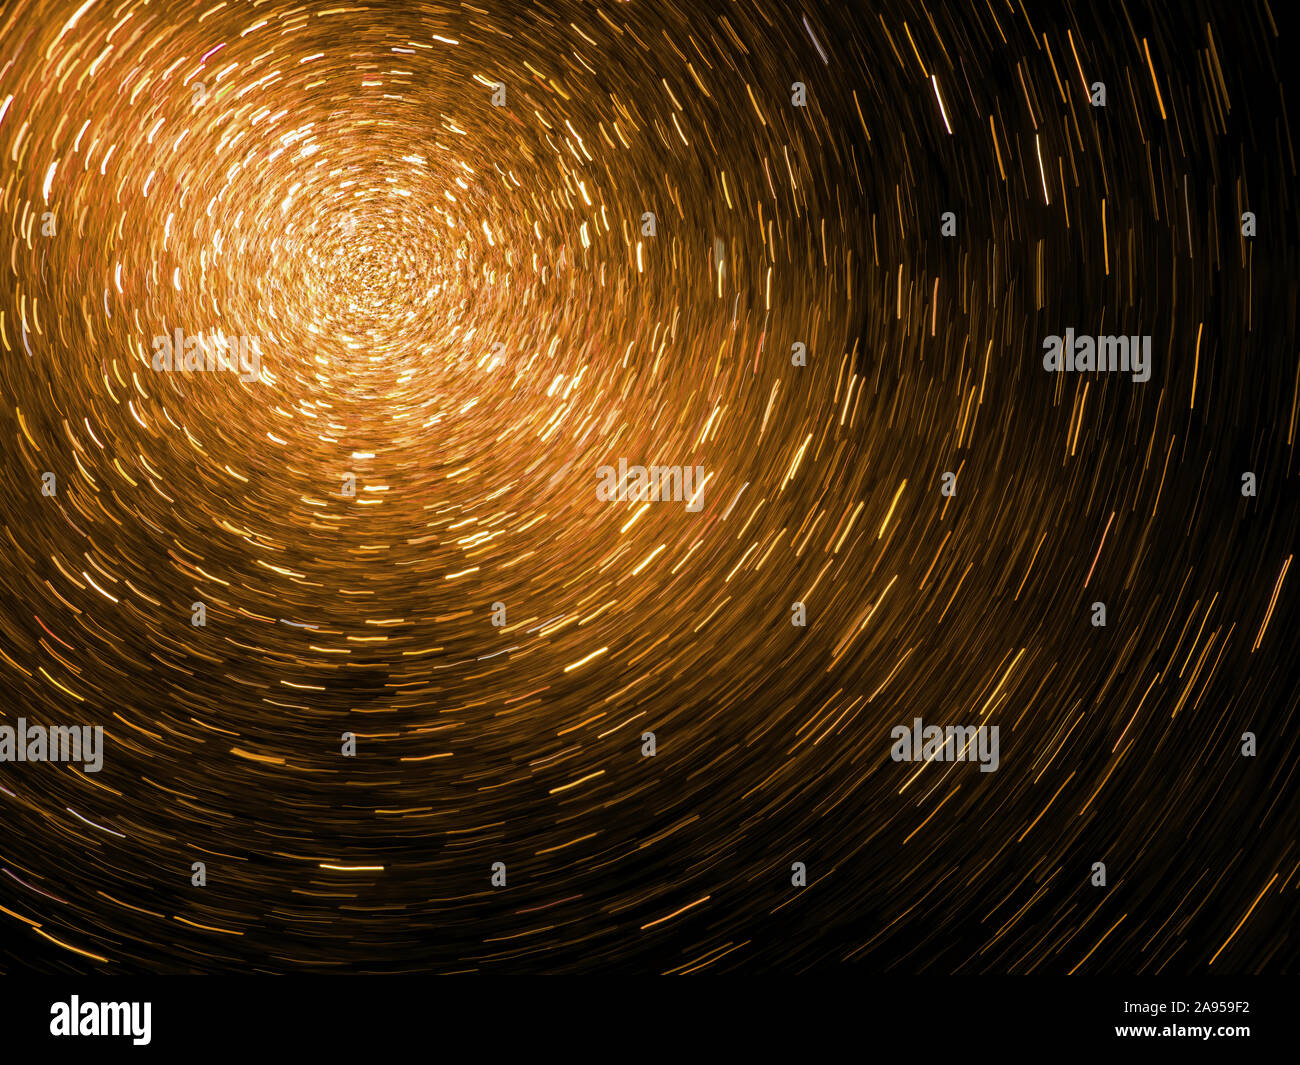 Swiring vortex de lumière - particules. La science - la physique peut-être. Fond sombre. Banque D'Images